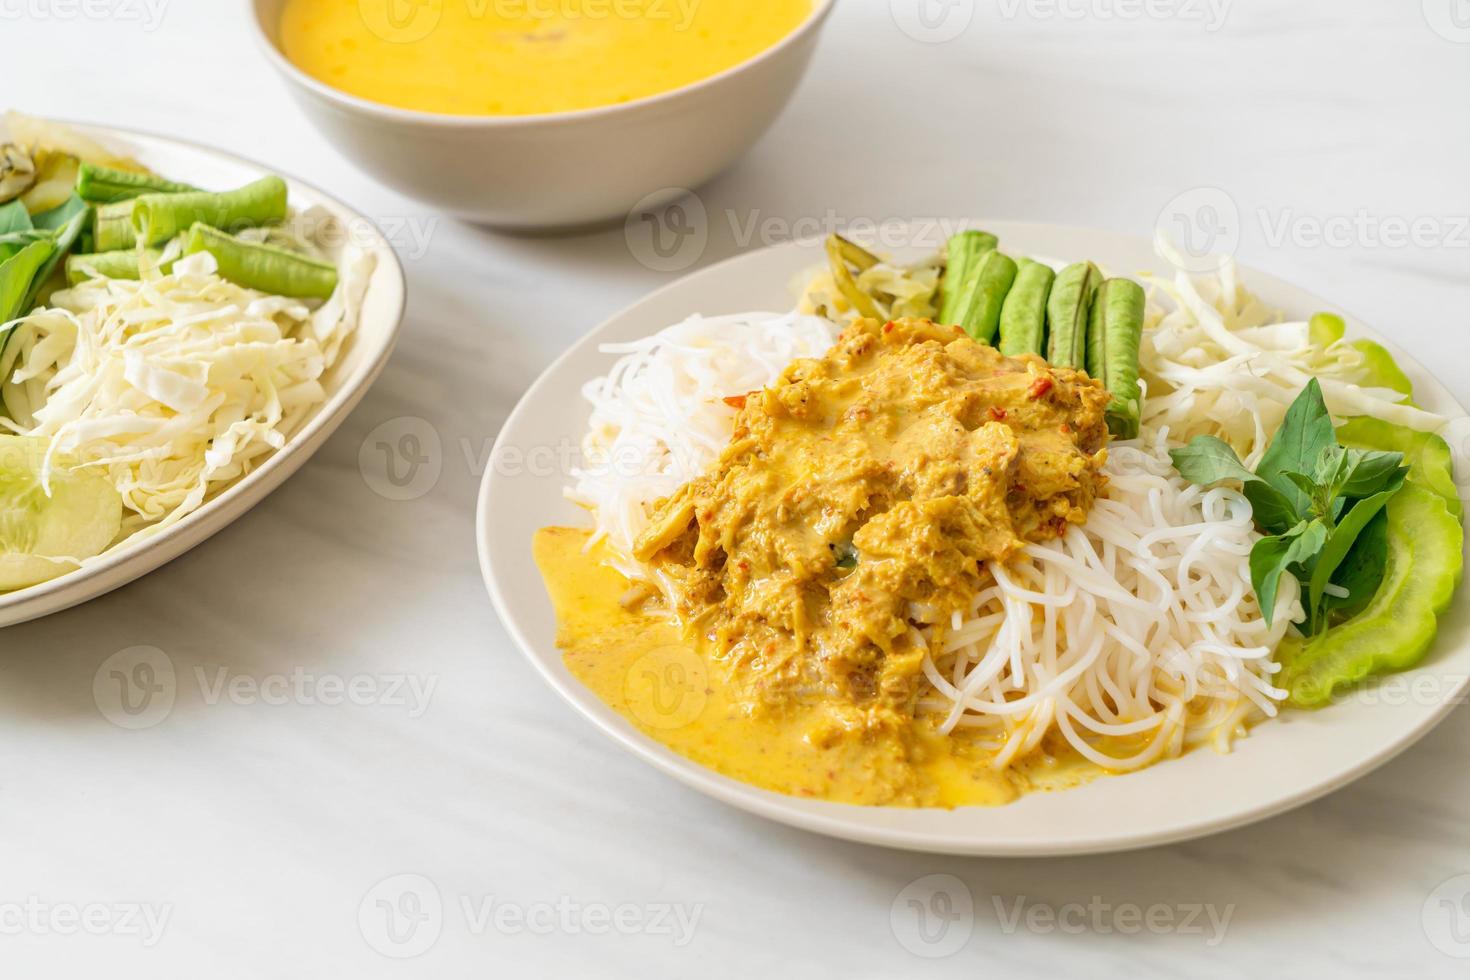 thailändische Reisnudeln mit Krabbencurry und verschiedenem Gemüse foto